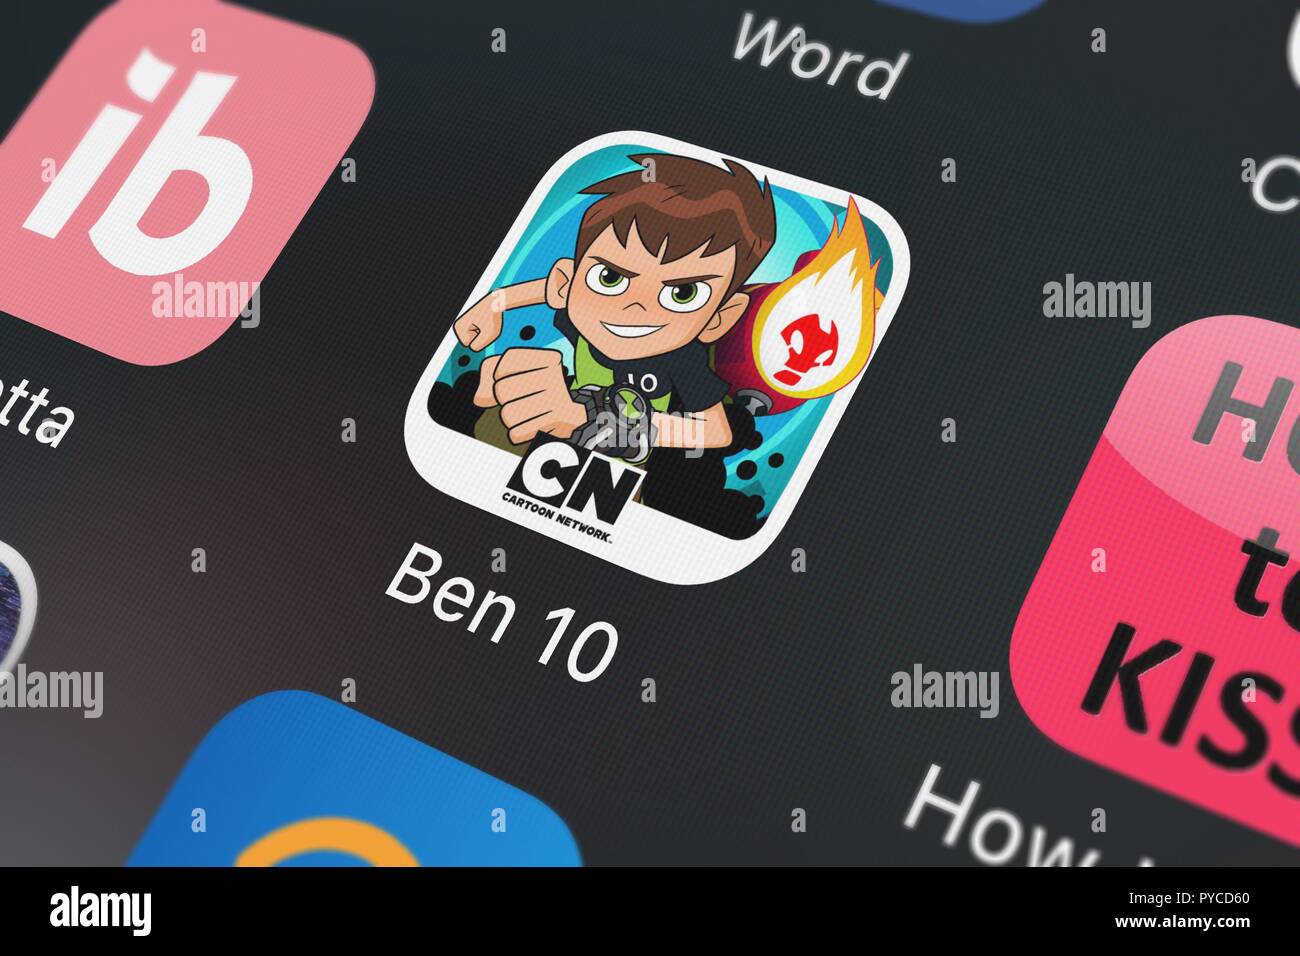 CN Launches New 'Ben 10' App